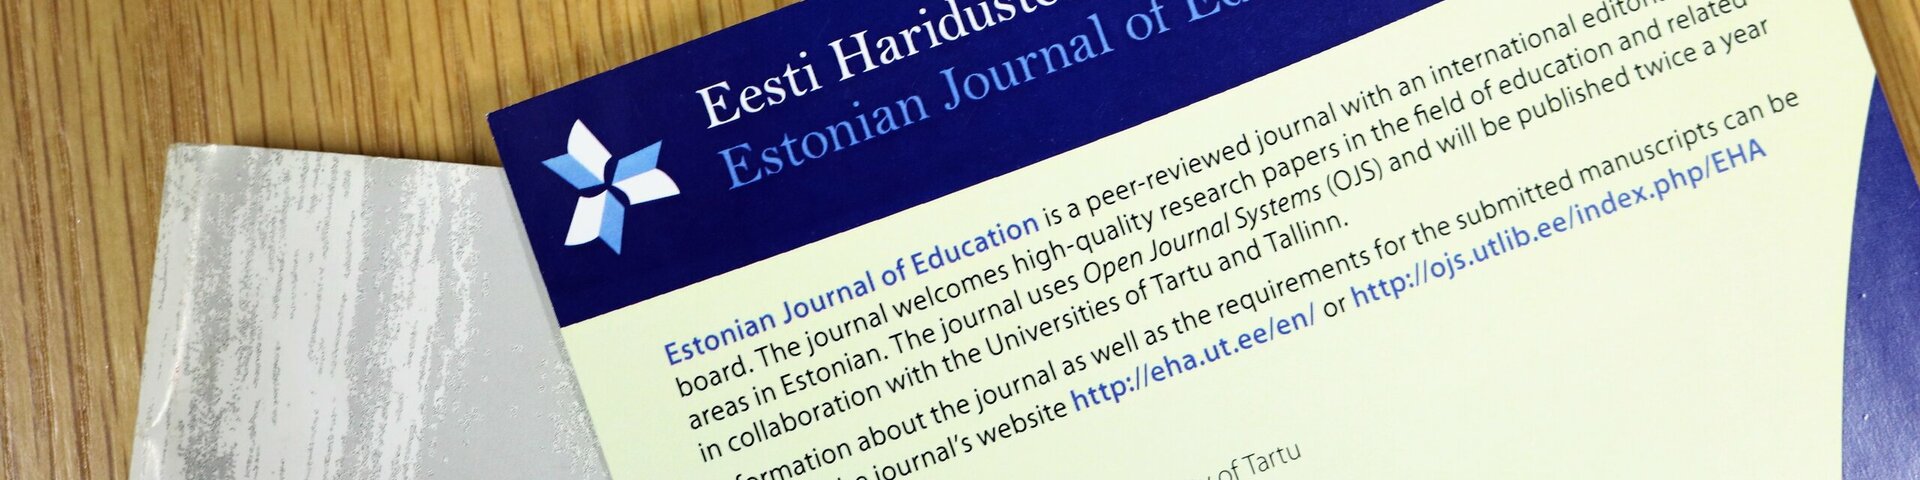 Eesti Haridusteaduste Ajakiri